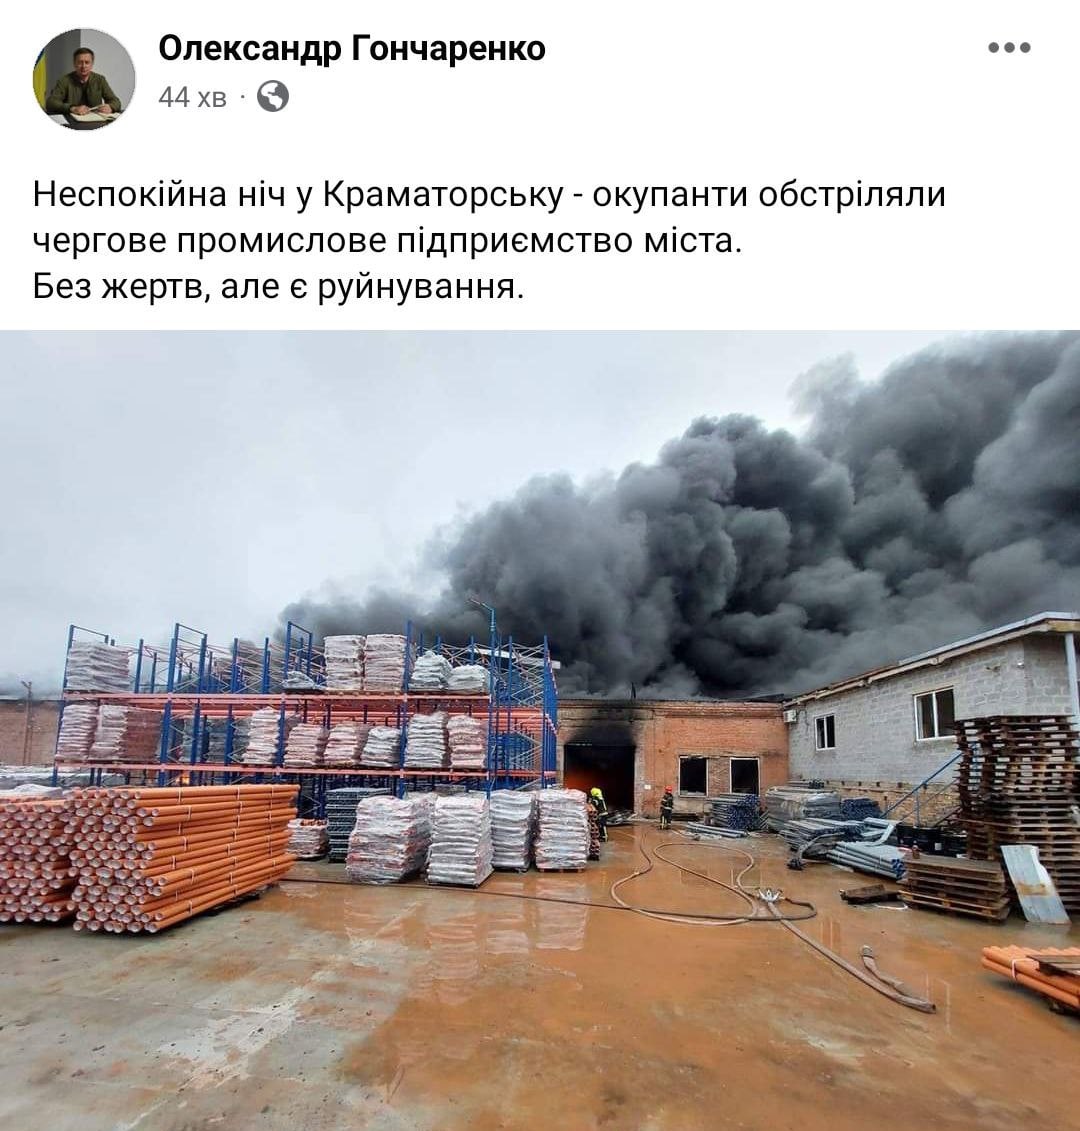 Оккупанты обстреляли промышленное предприятие в Краматорске сегодня ночью, — мэр города Александр Гончаренко 